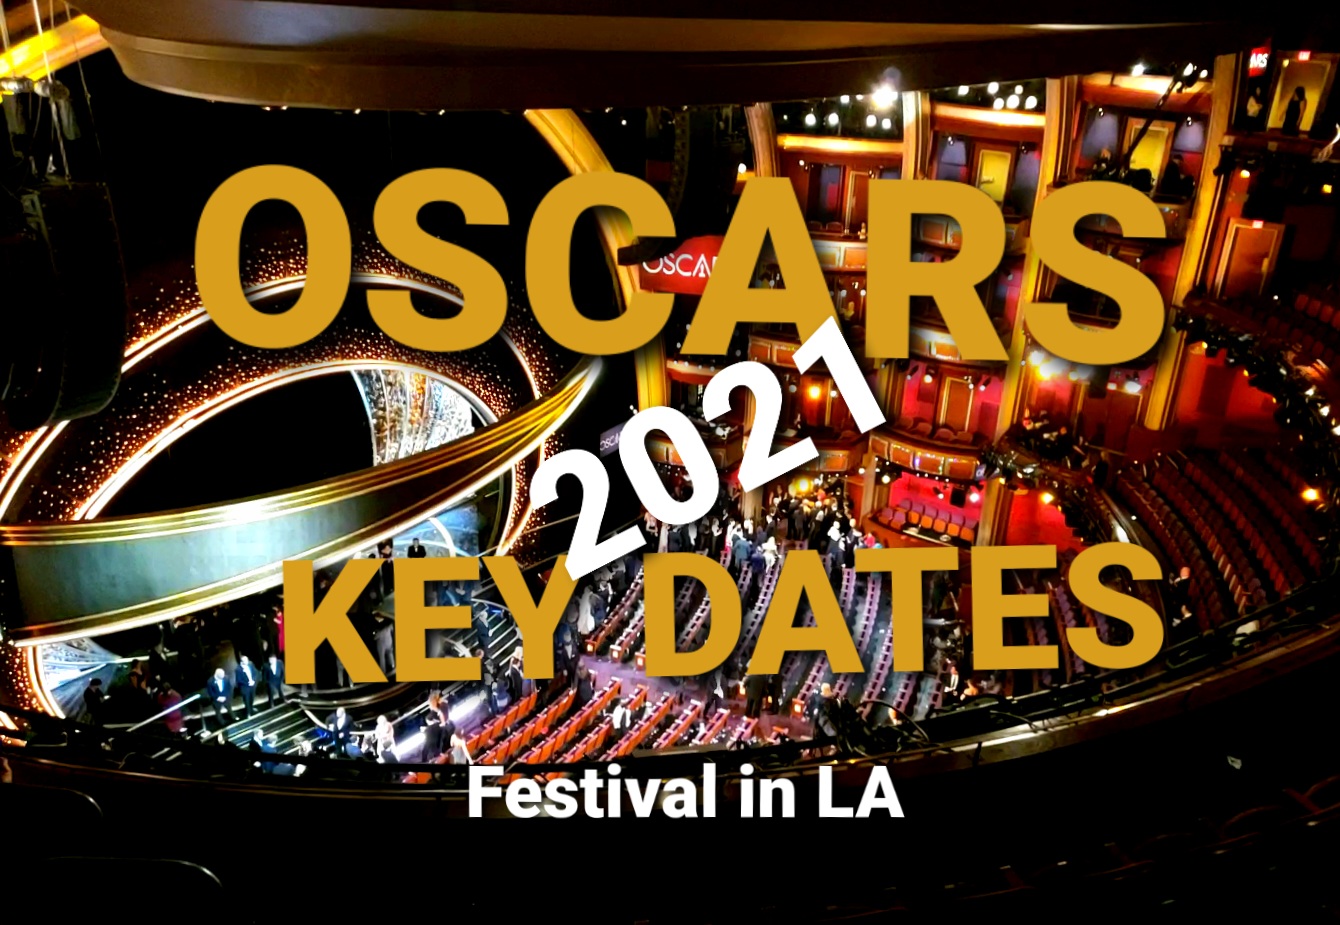 Festival In LA: OSCARS 2021 NEW KEY DATES